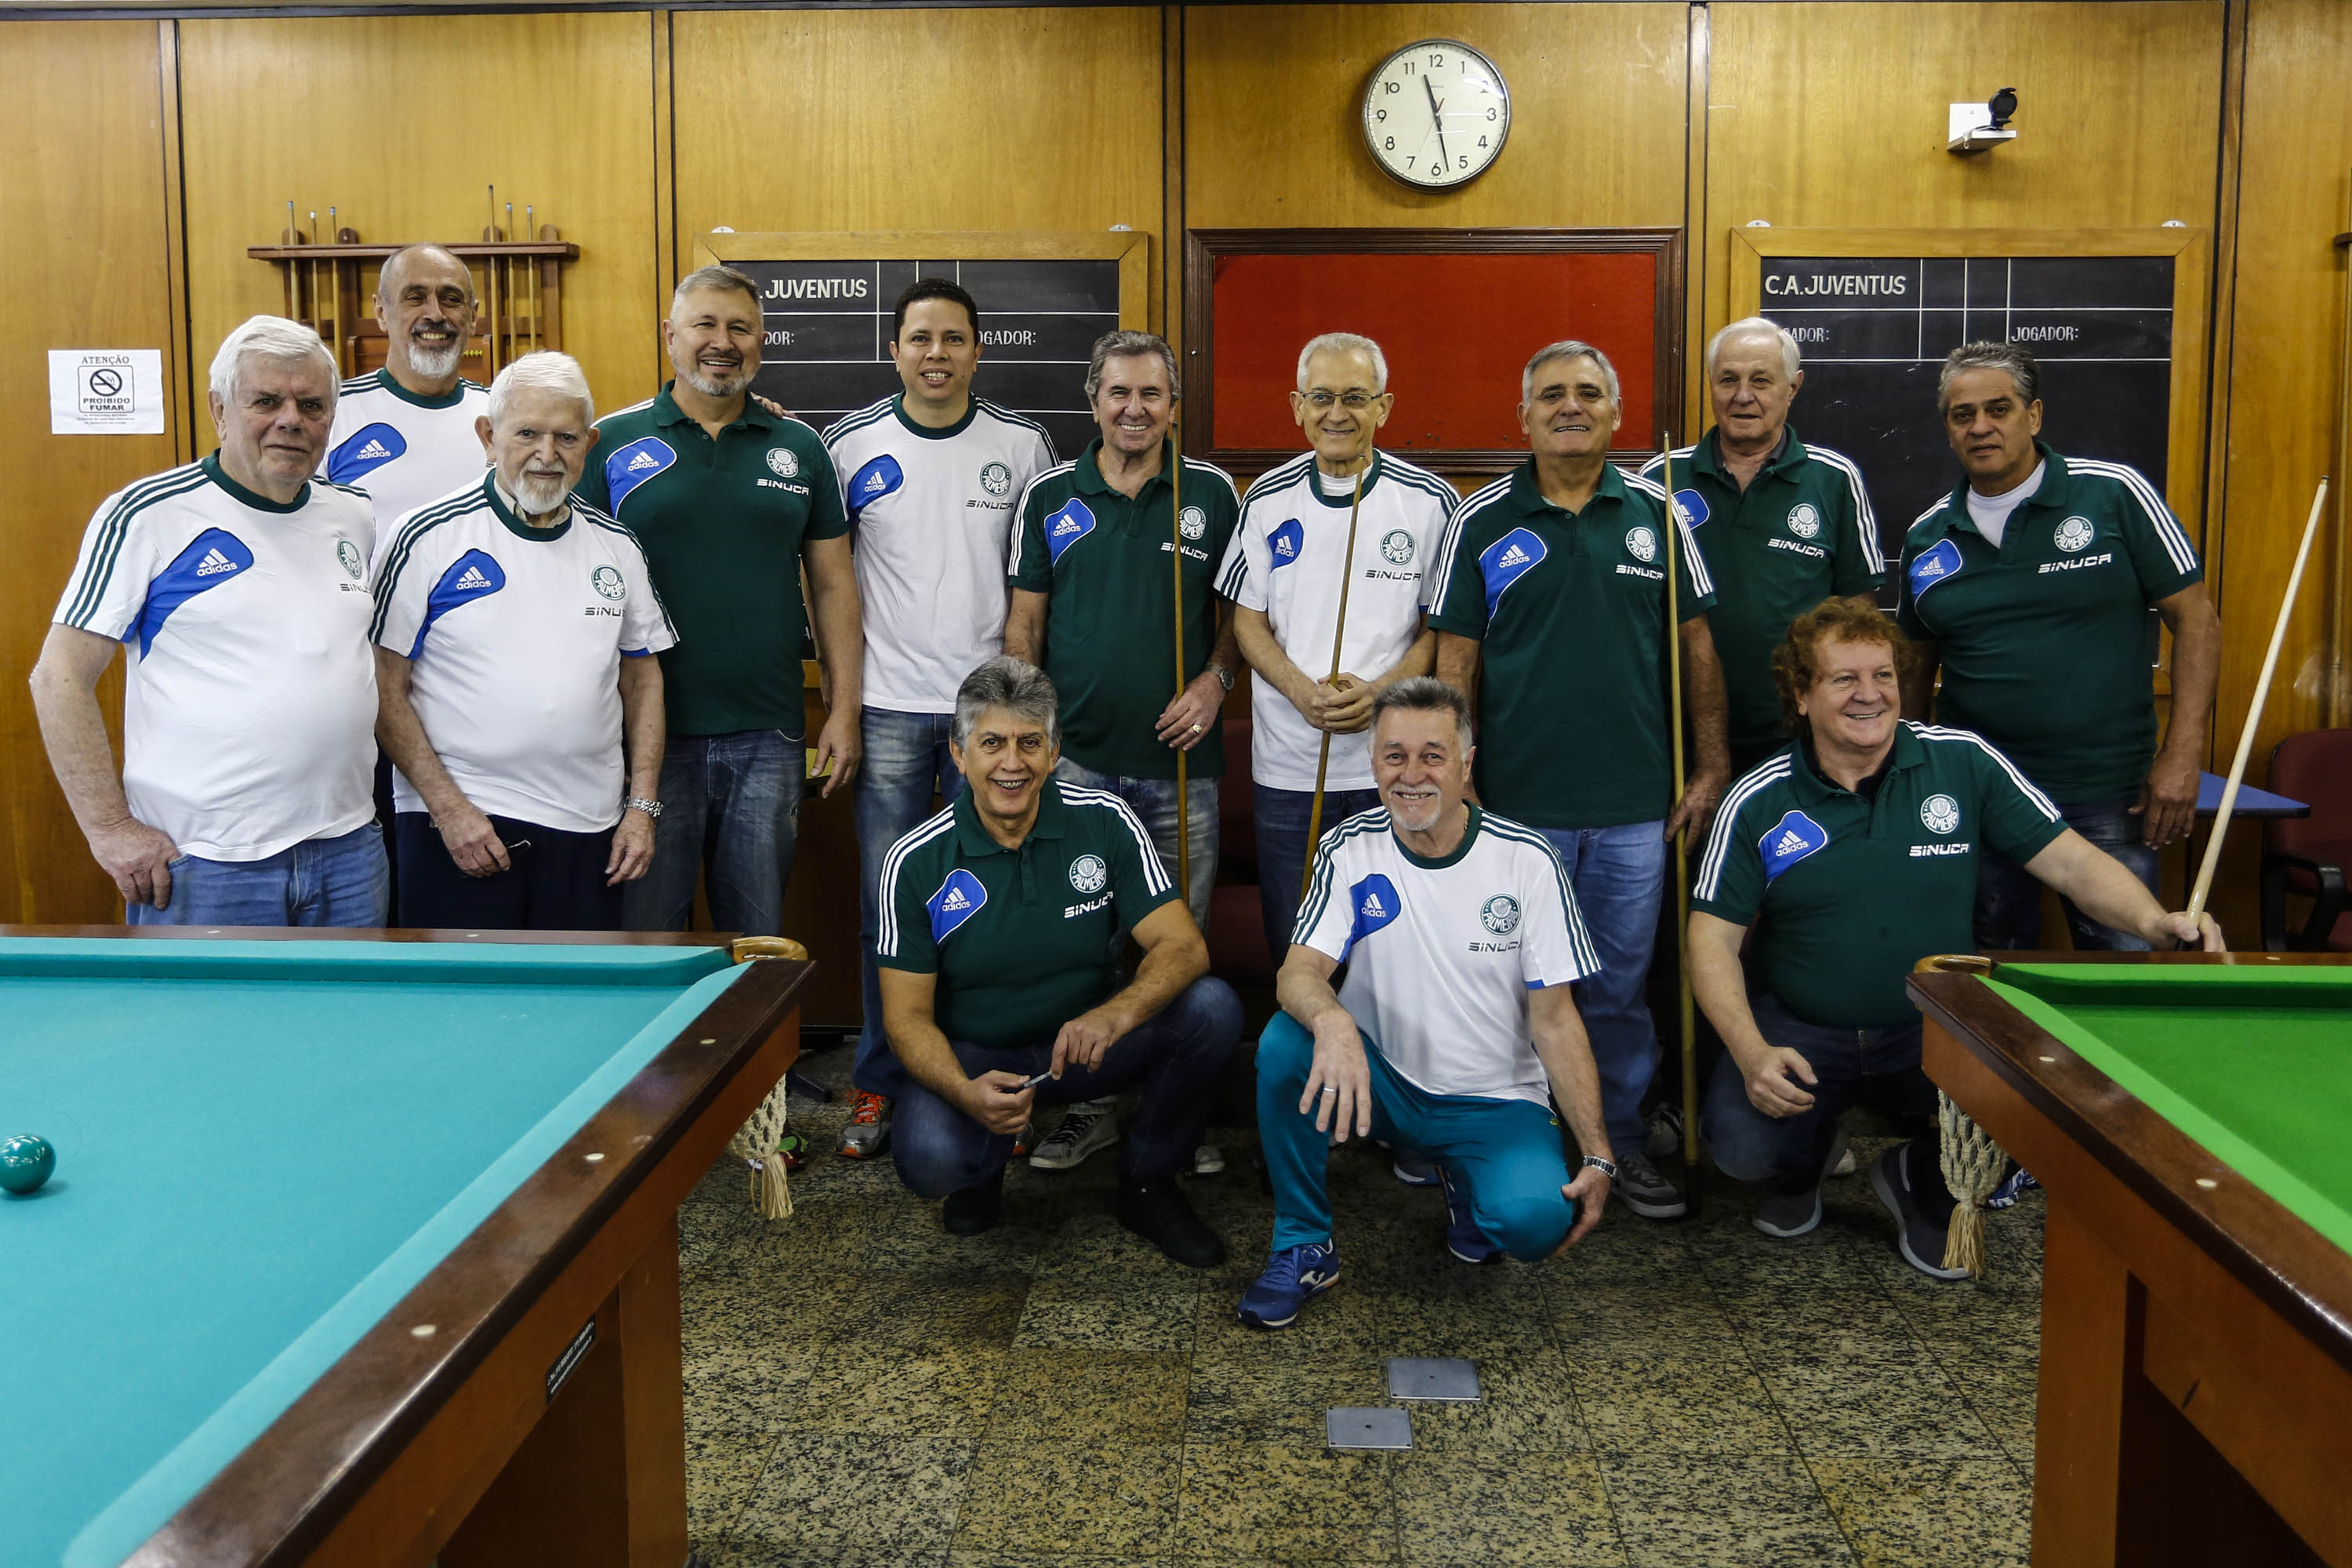 Clube Atlético JuventusClube promove o 10º Campeonato Interno de Snooker -  Clube Atlético Juventus